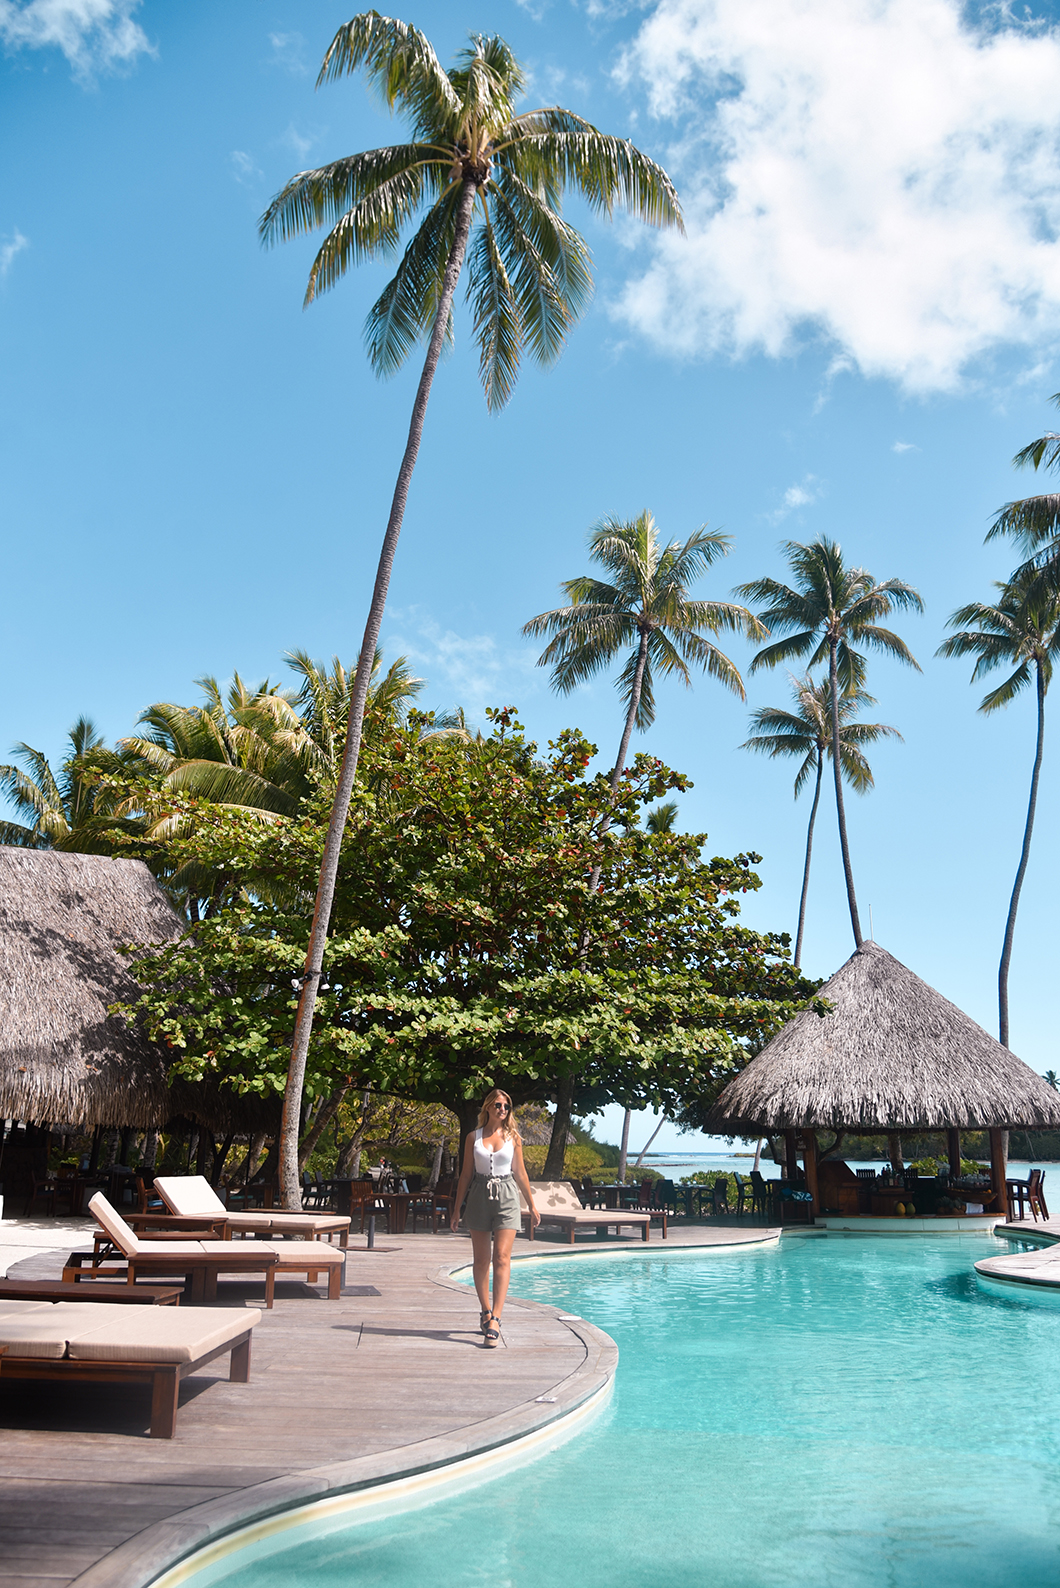 Taha'a Island Resort, l’un des plus beaux hôtels de la Polynésie Française